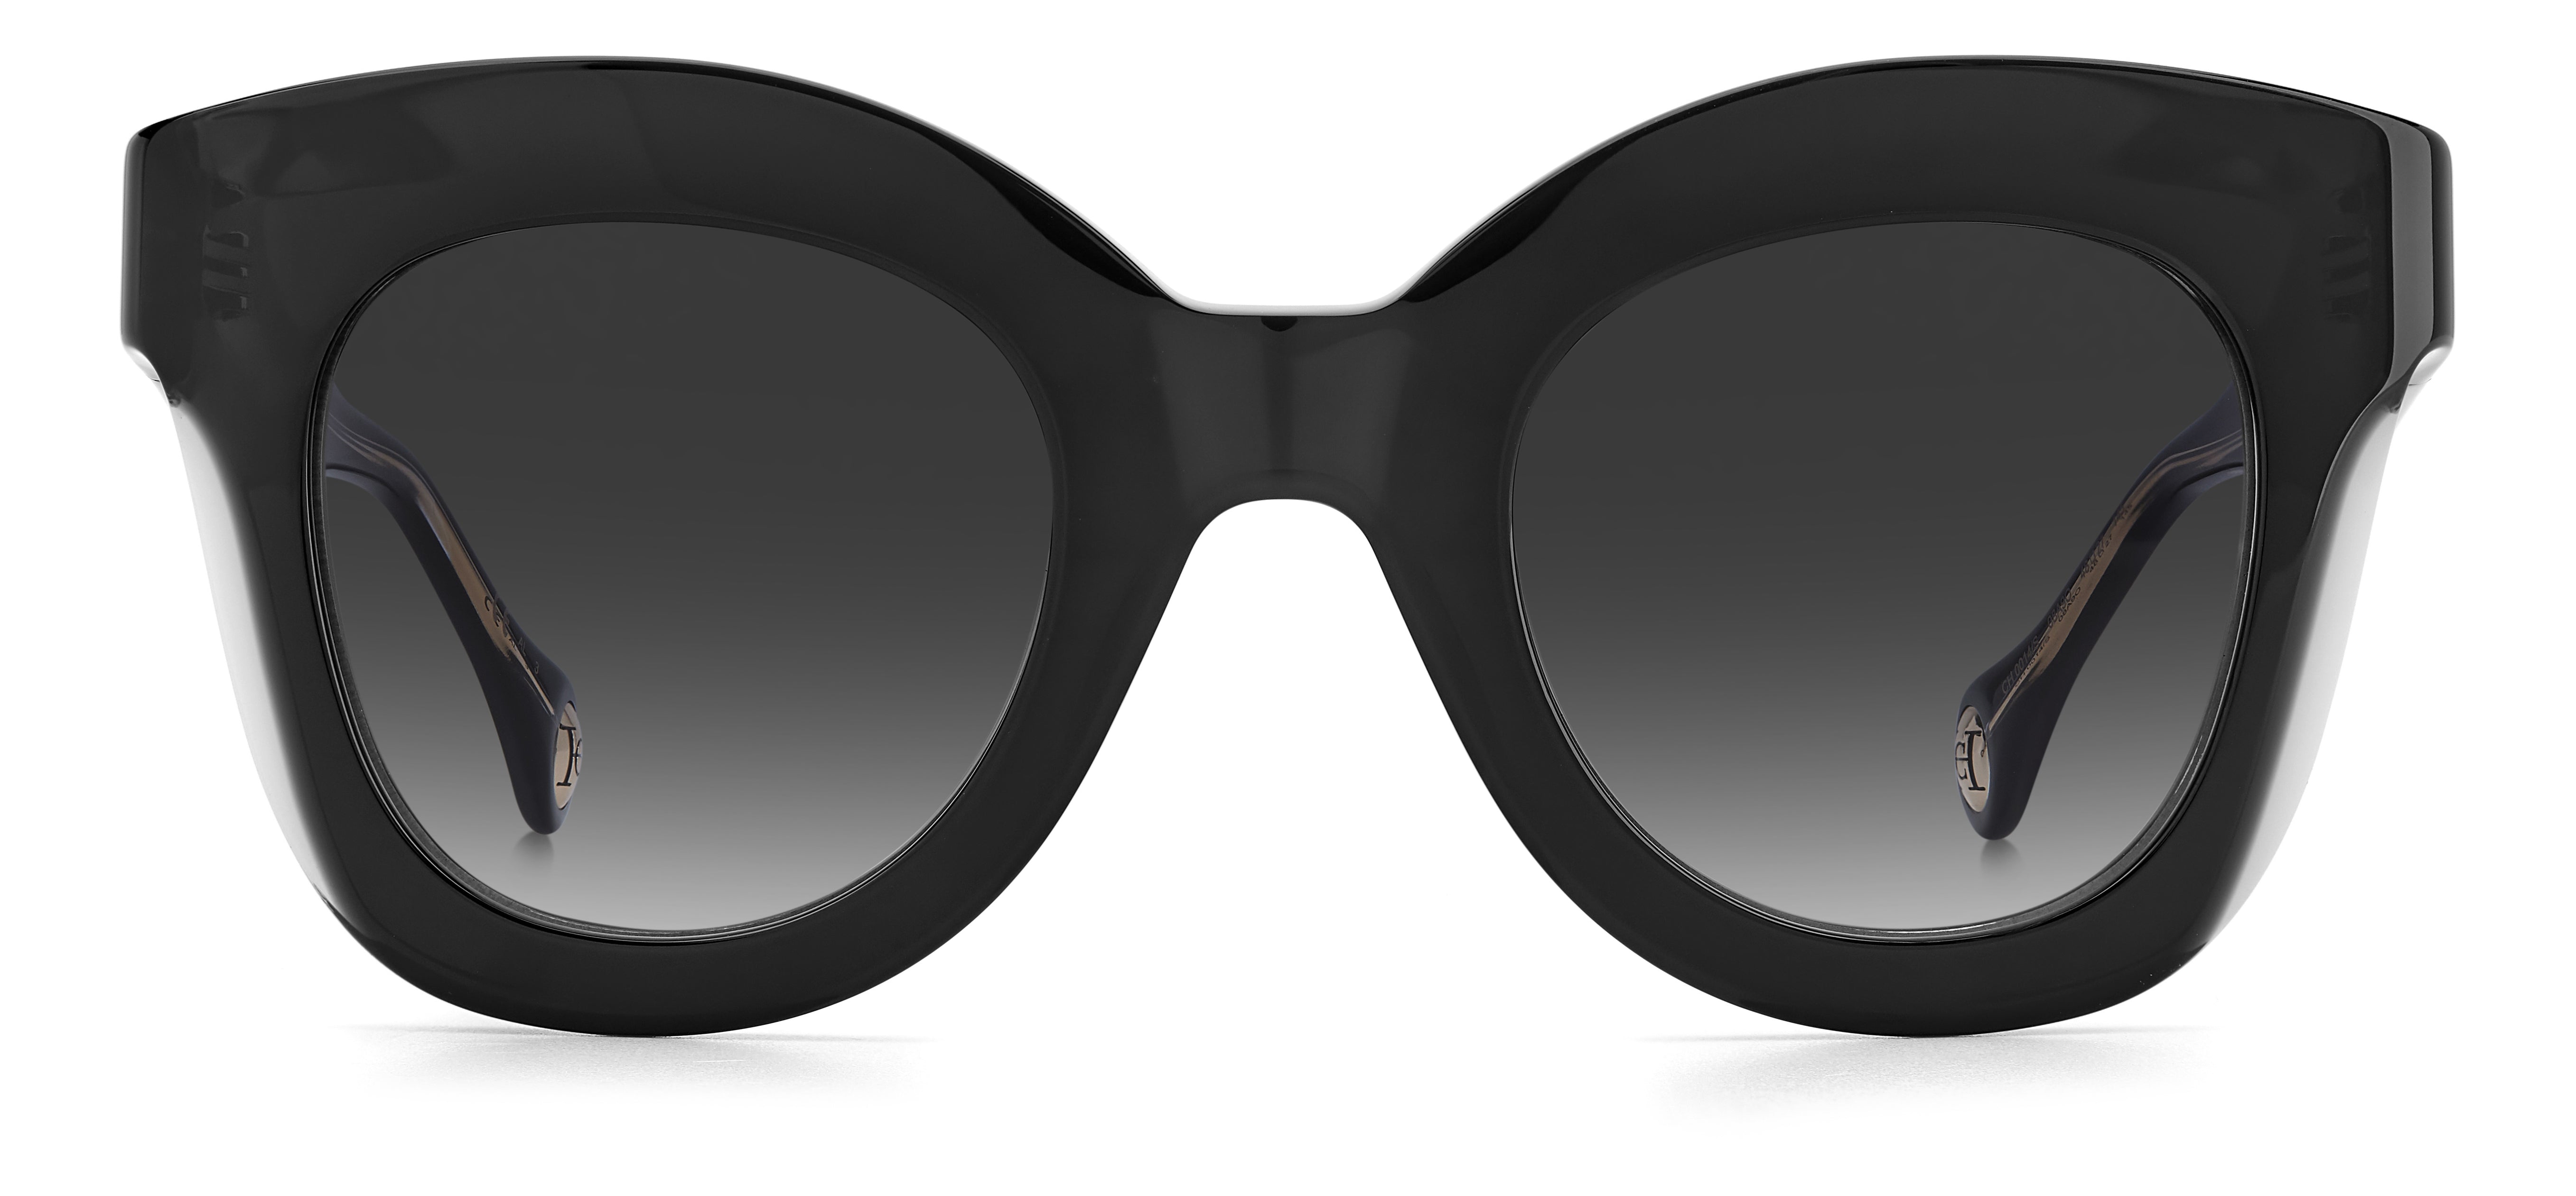 Carolina Herrera Woman Round Sunglasses